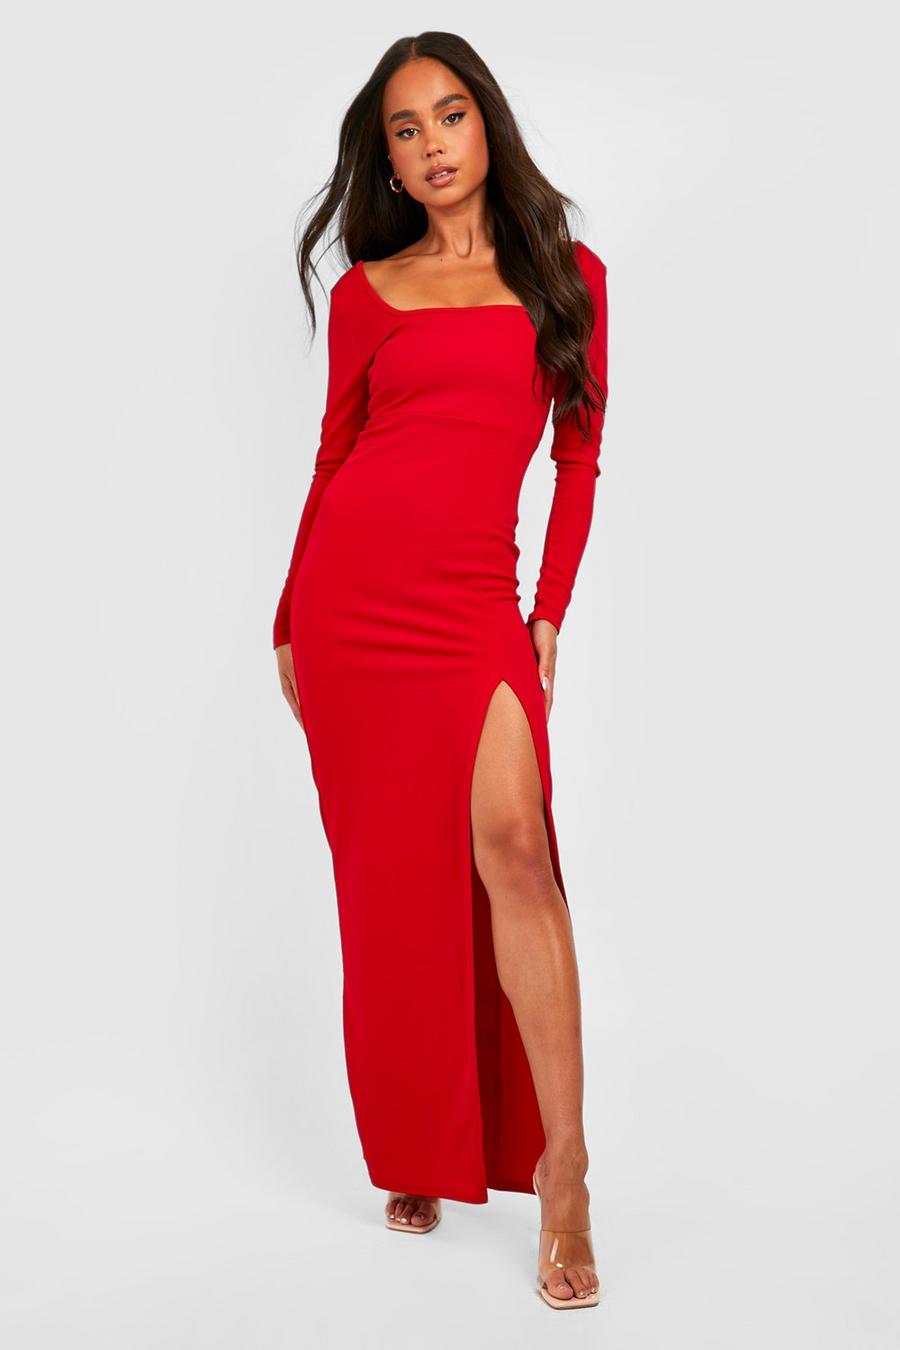 אדום rojo שמלת מקסי עם שרוולים ארוכים, שסע בצד וצווארון מרובע, פטיט